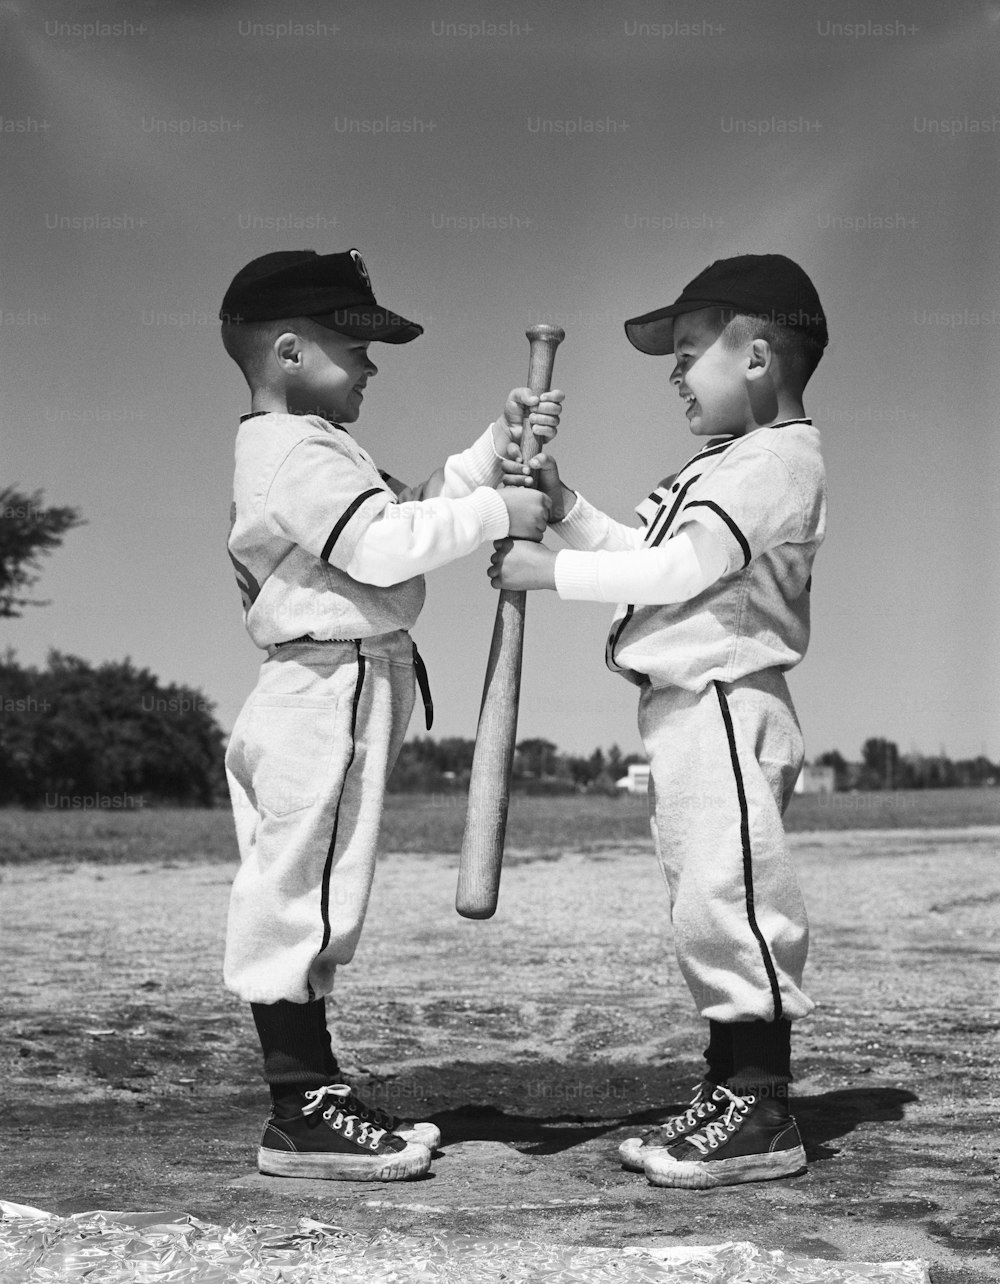 VEREINIGTE STAATEN - CIRCA 1960er Jahre: Zwei Jungen in Little League Uniformen, die sich gegenüberstehen und Baseballschläger halten.